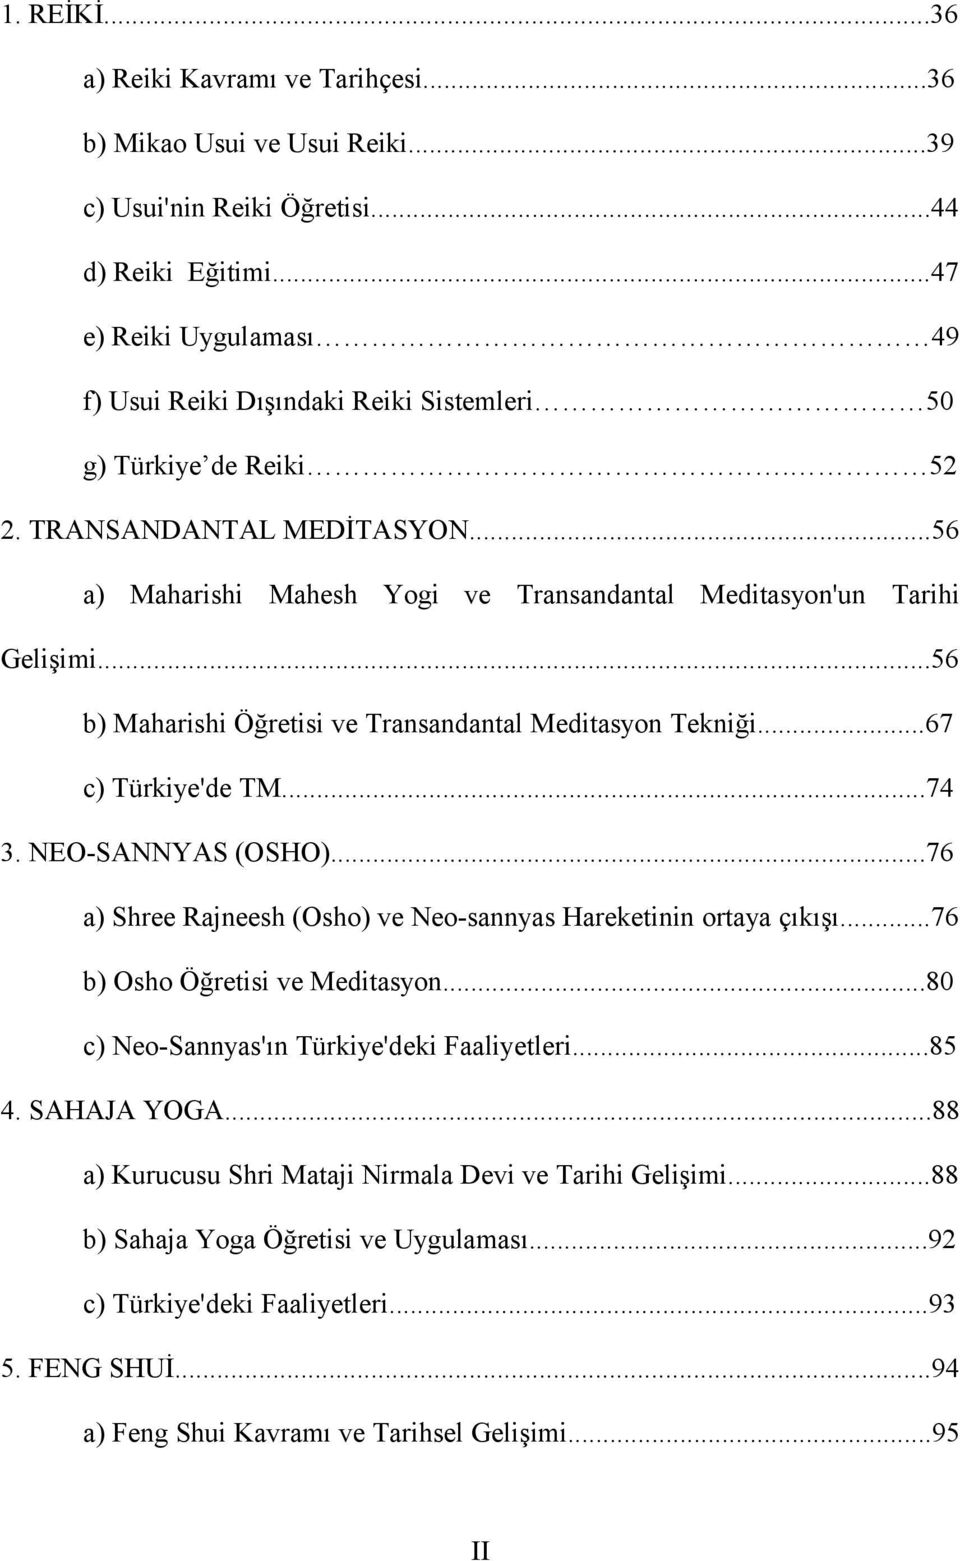 ..56 b) Maharishi Öğretisi ve Transandantal Meditasyon Tekniği...67 c) Türkiye'de TM...74 3. NEO-SANNYAS (OSHO)...76 a) Shree Rajneesh (Osho) ve Neo-sannyas Hareketinin ortaya çıkışı.